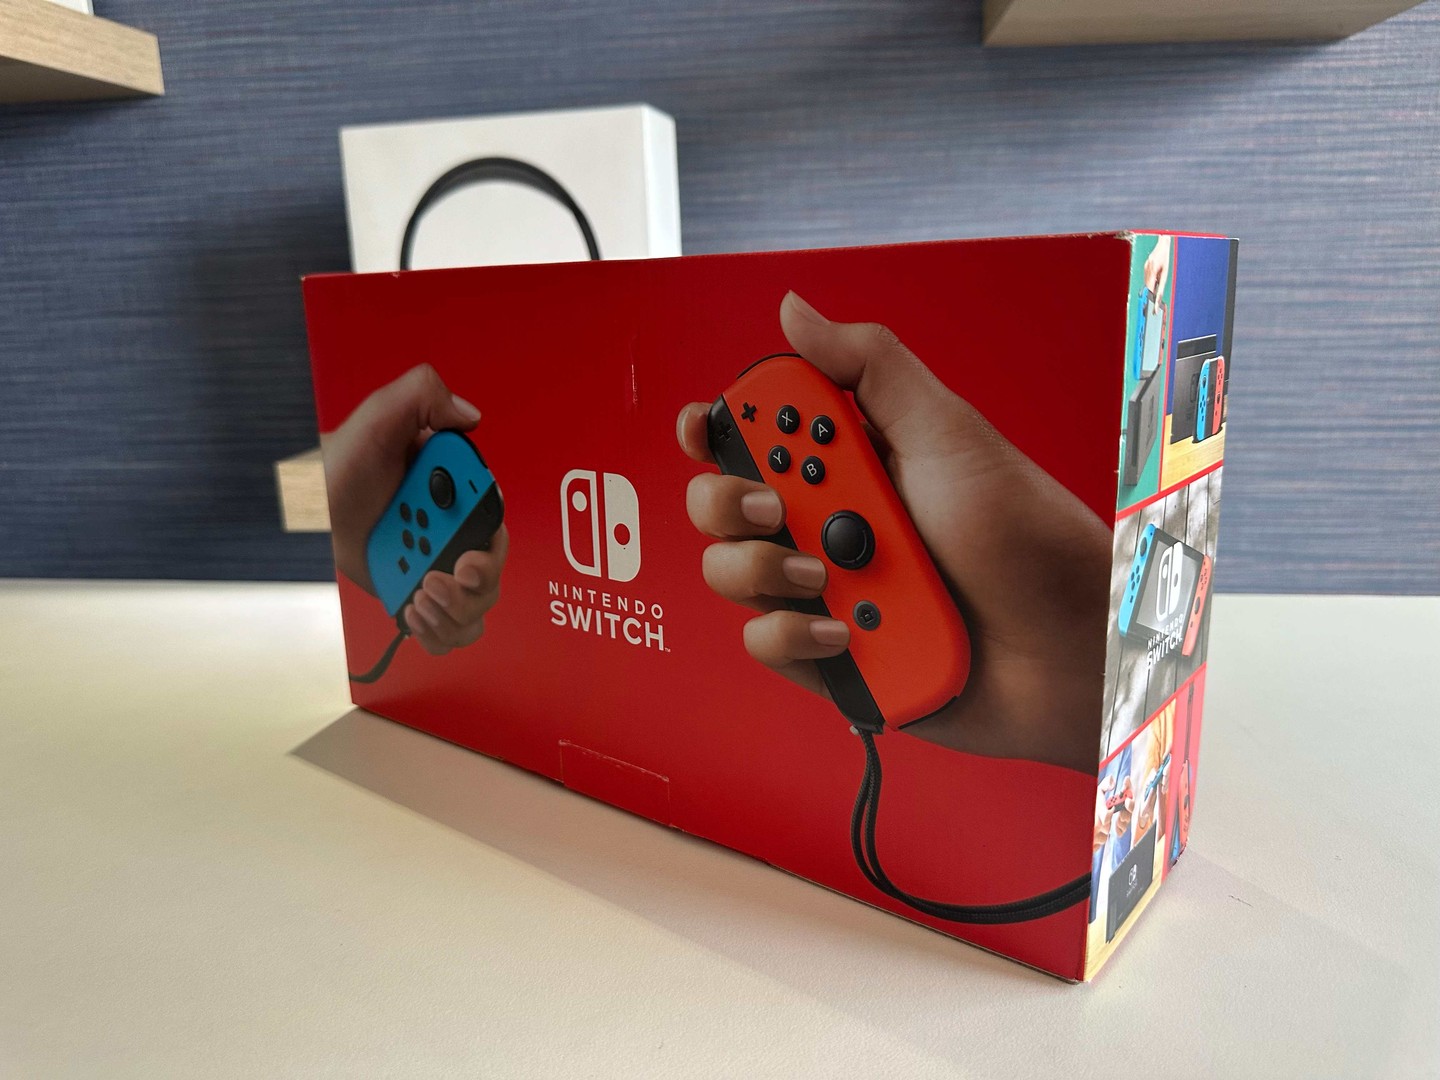 consolas y videojuegos - Vendo Nintendo Switch V2 Nuevos Sellados, GarantÍa RD$ 16,900 NEG 1